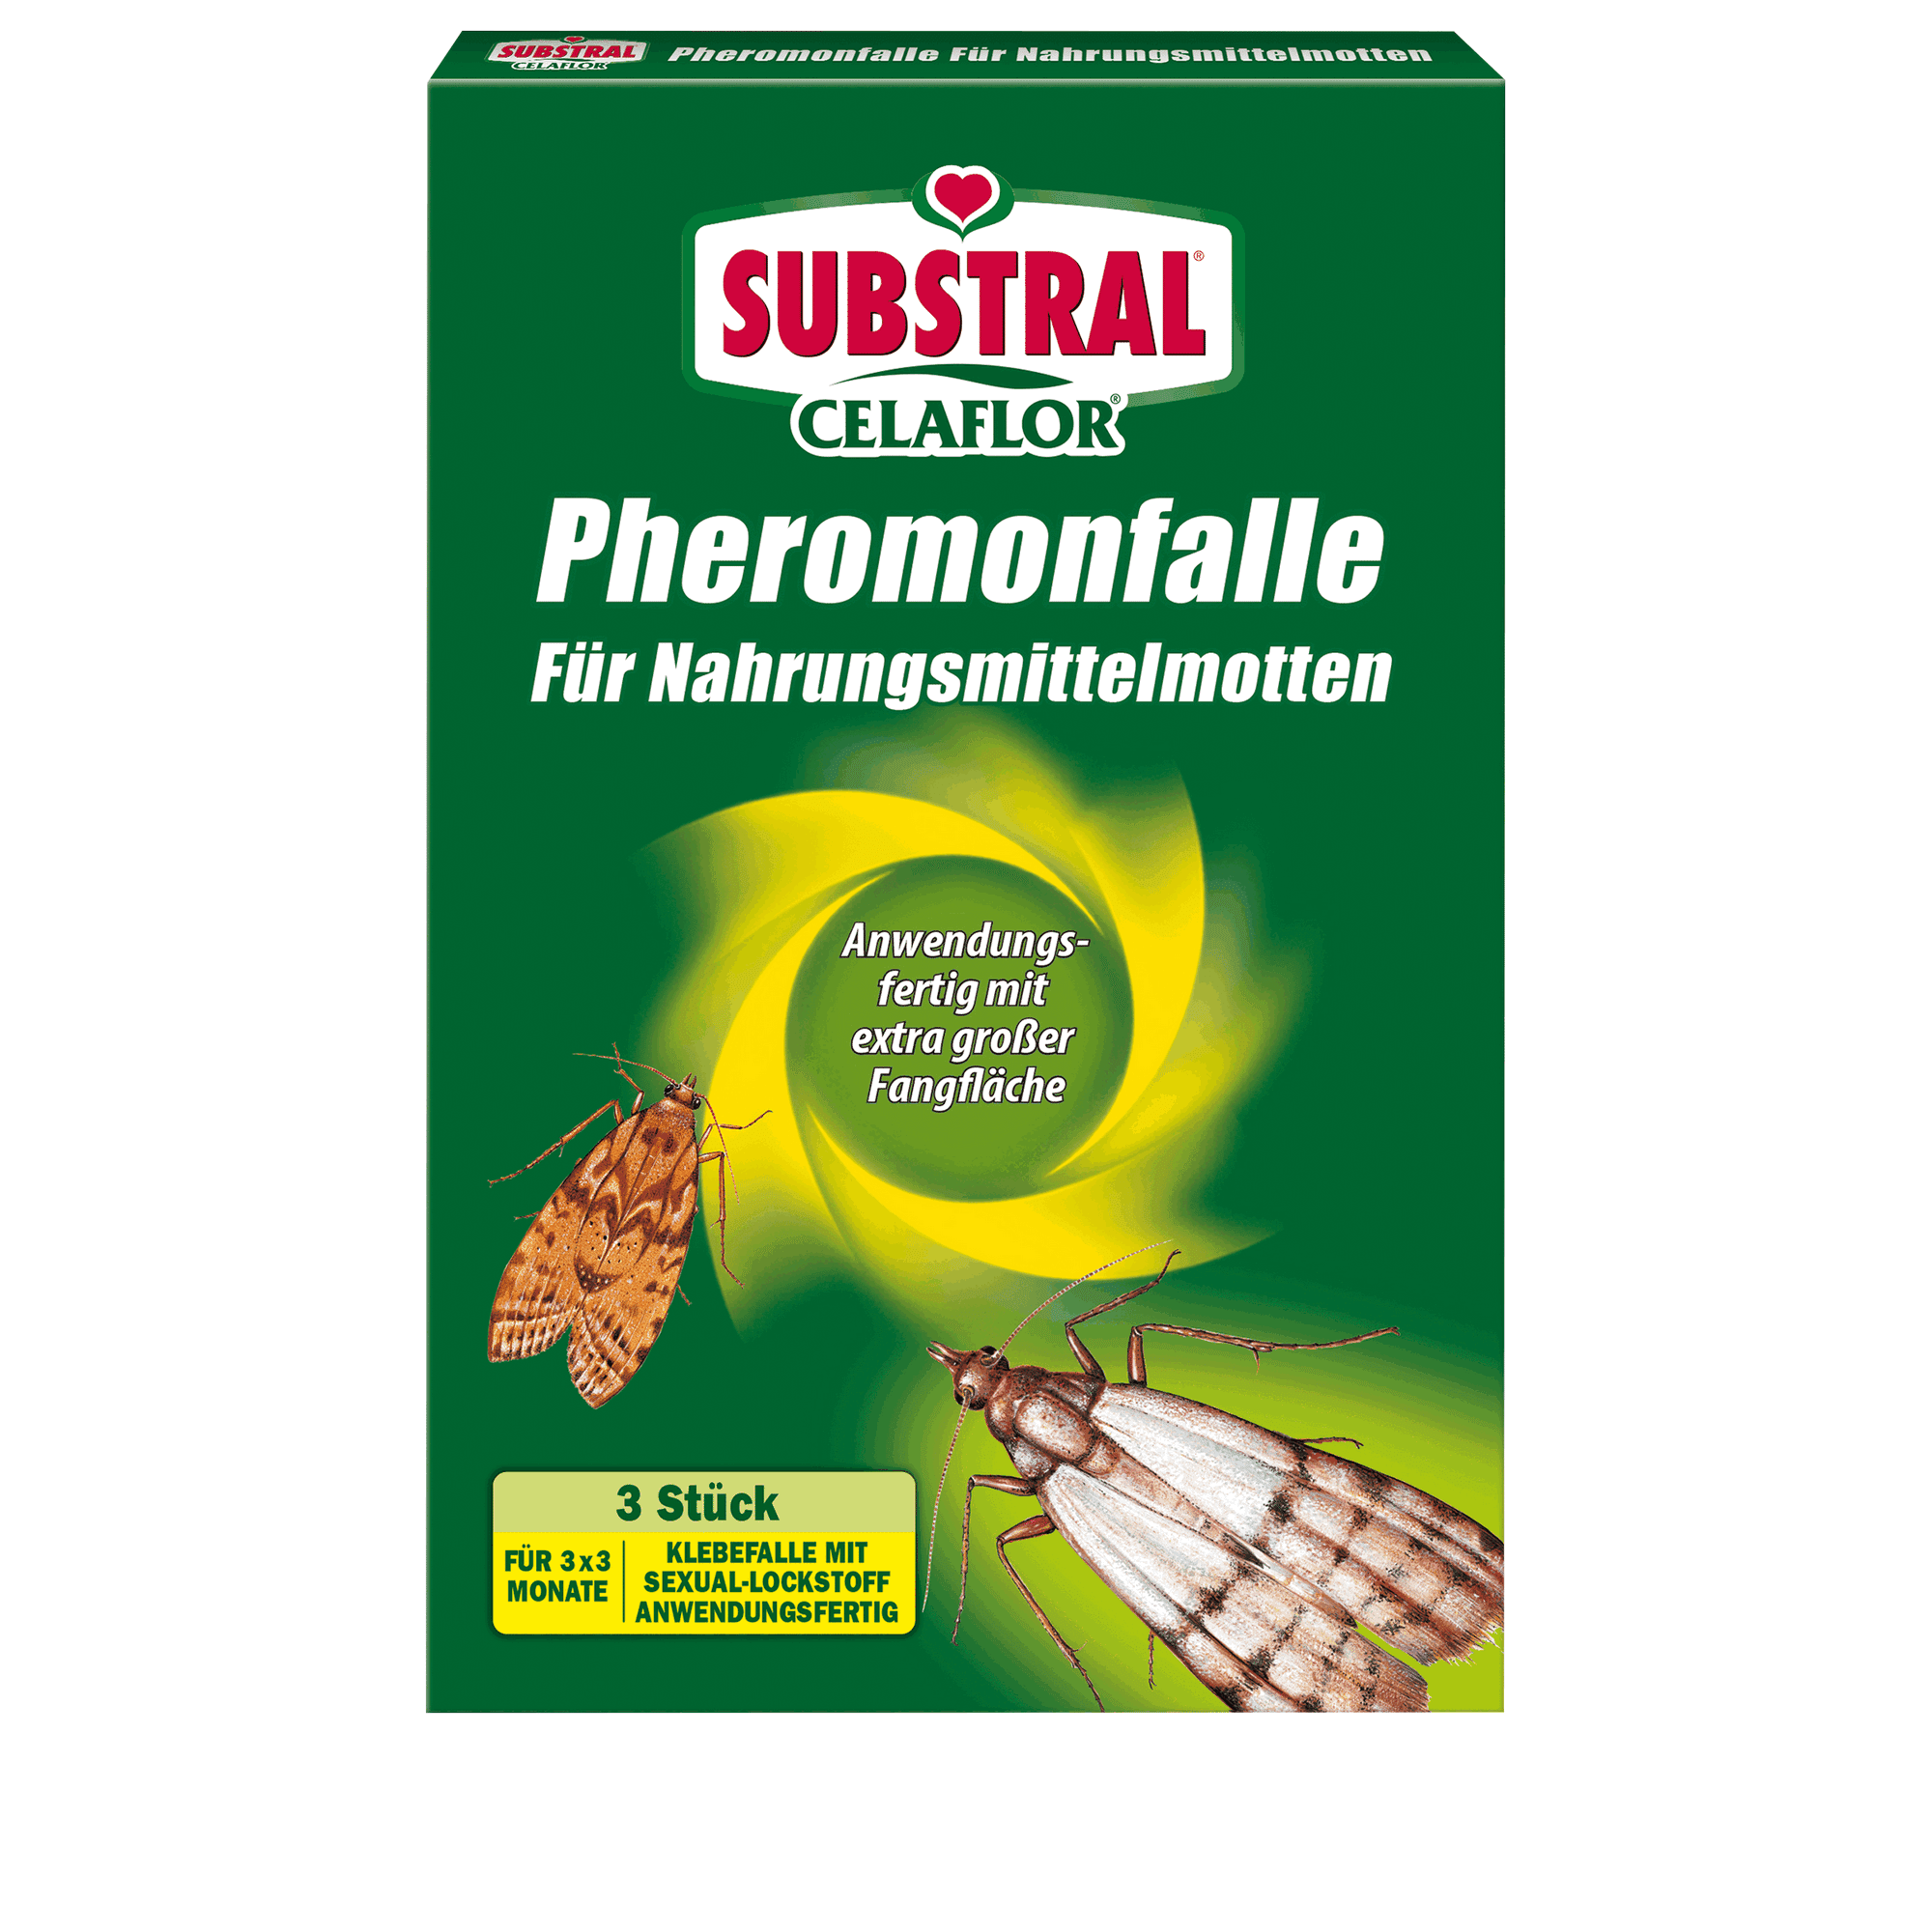 Pheromonfalle für Nahrungsmittelmotten 'Celaflor' 3 Stück + product picture